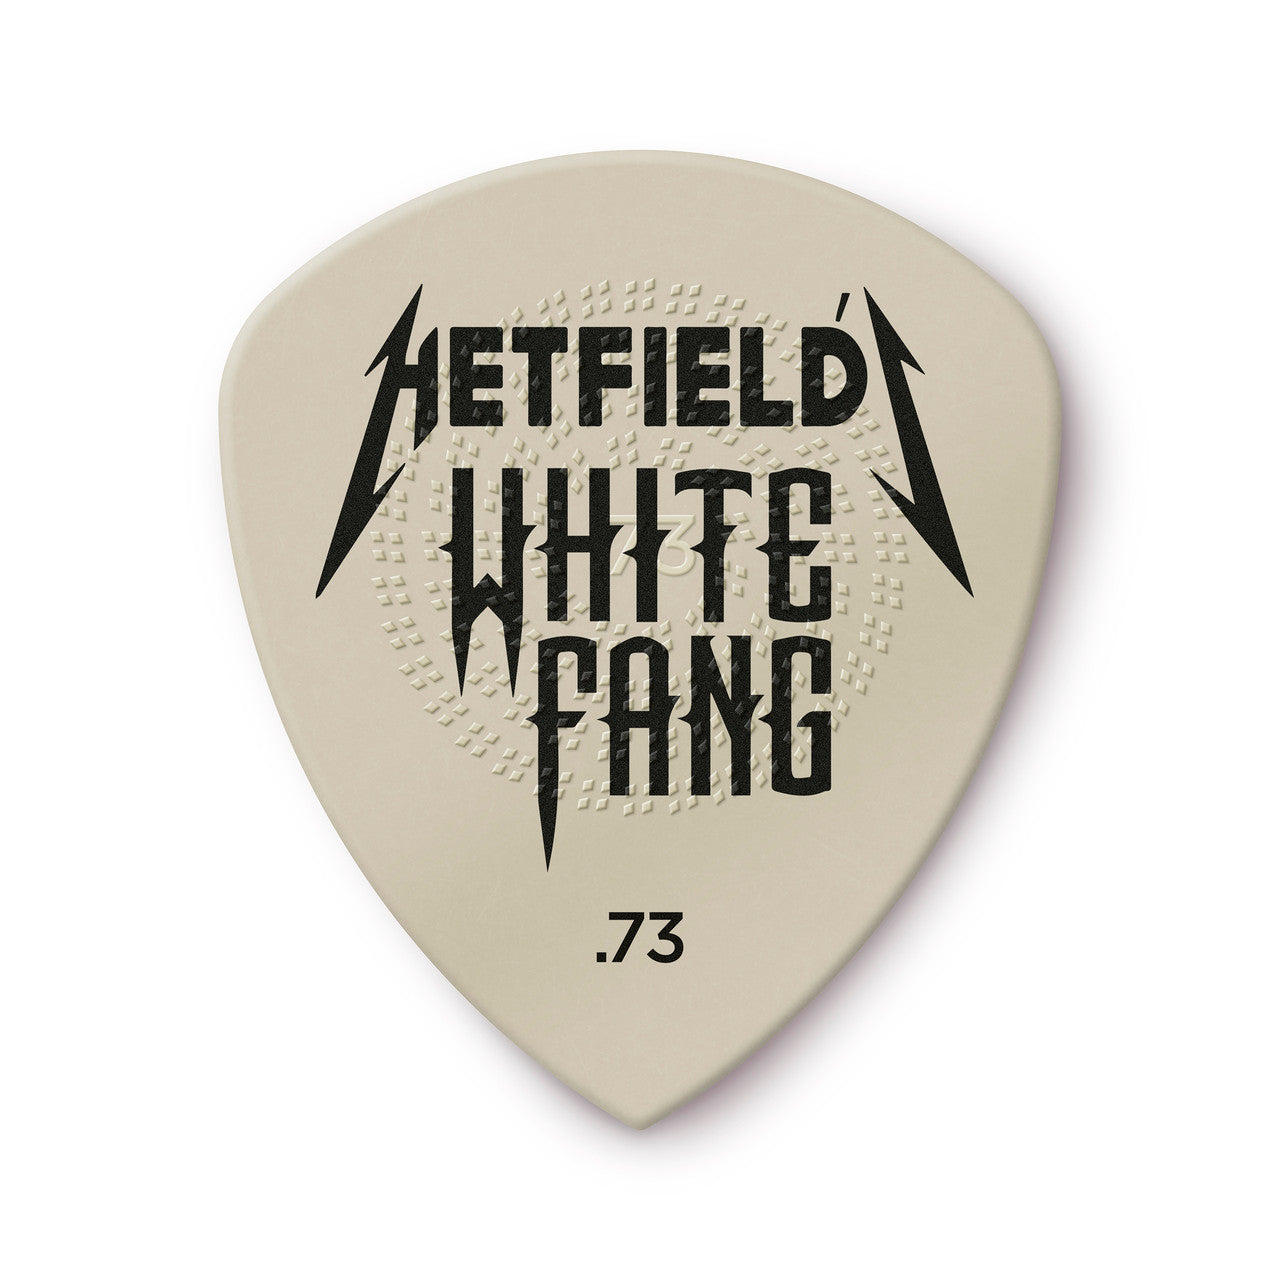 Dunlop Hetfield's White Fang™ Custom Flow® Pick .73mm Gauge